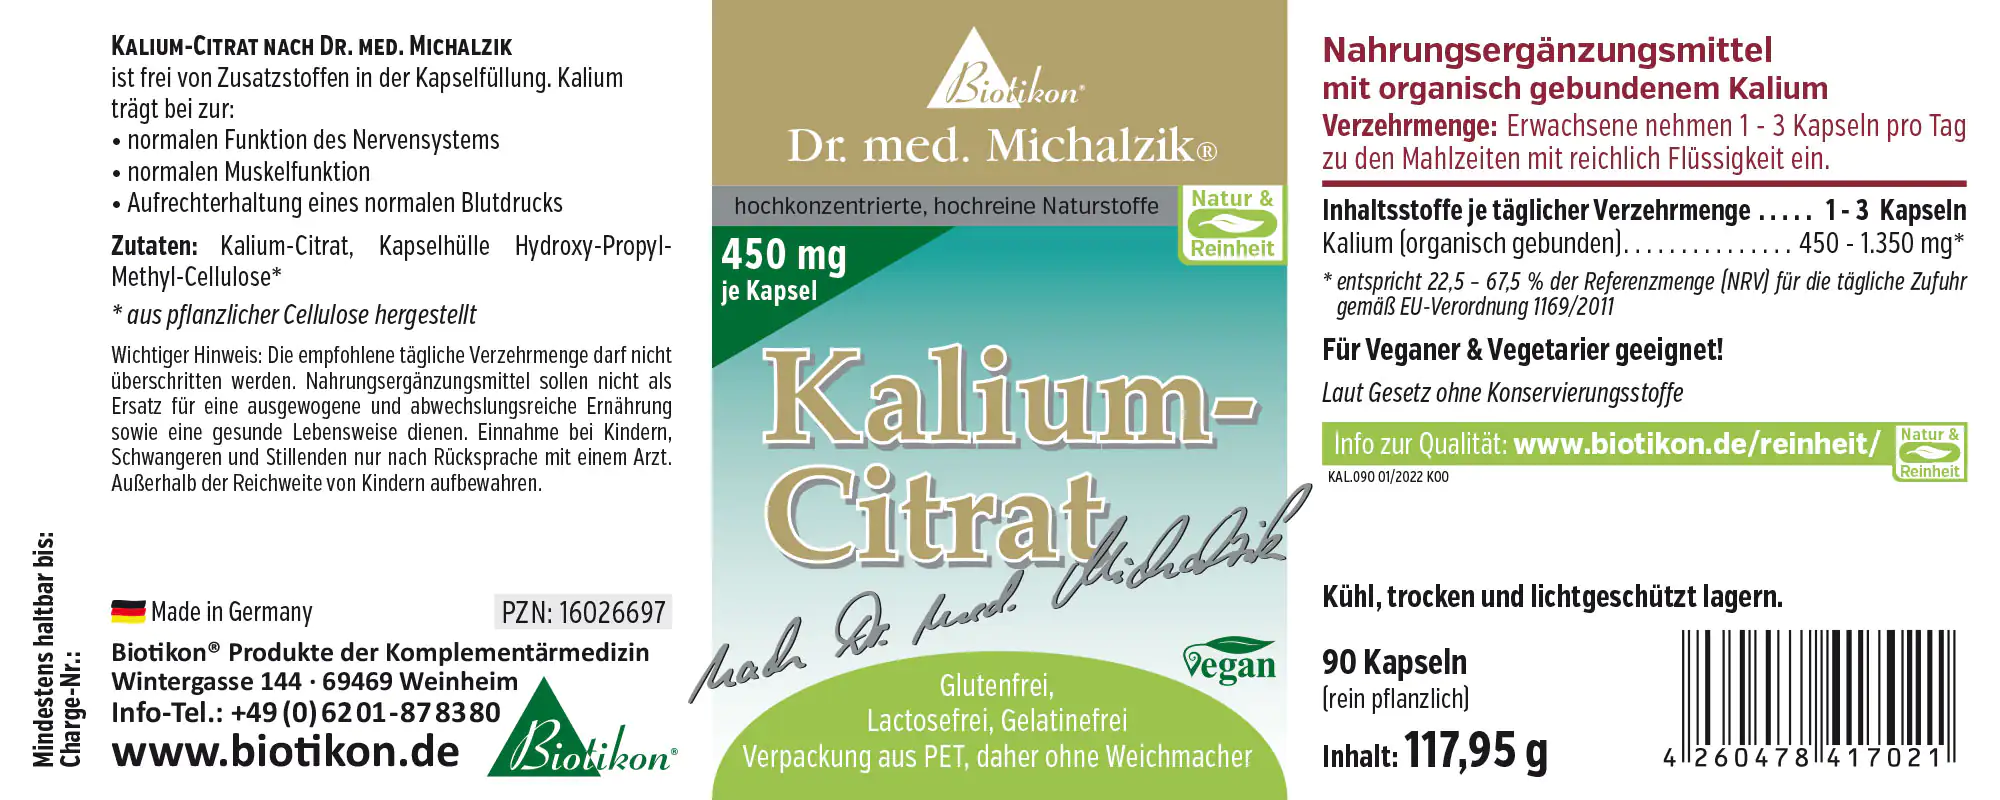 Kalium-Citrat